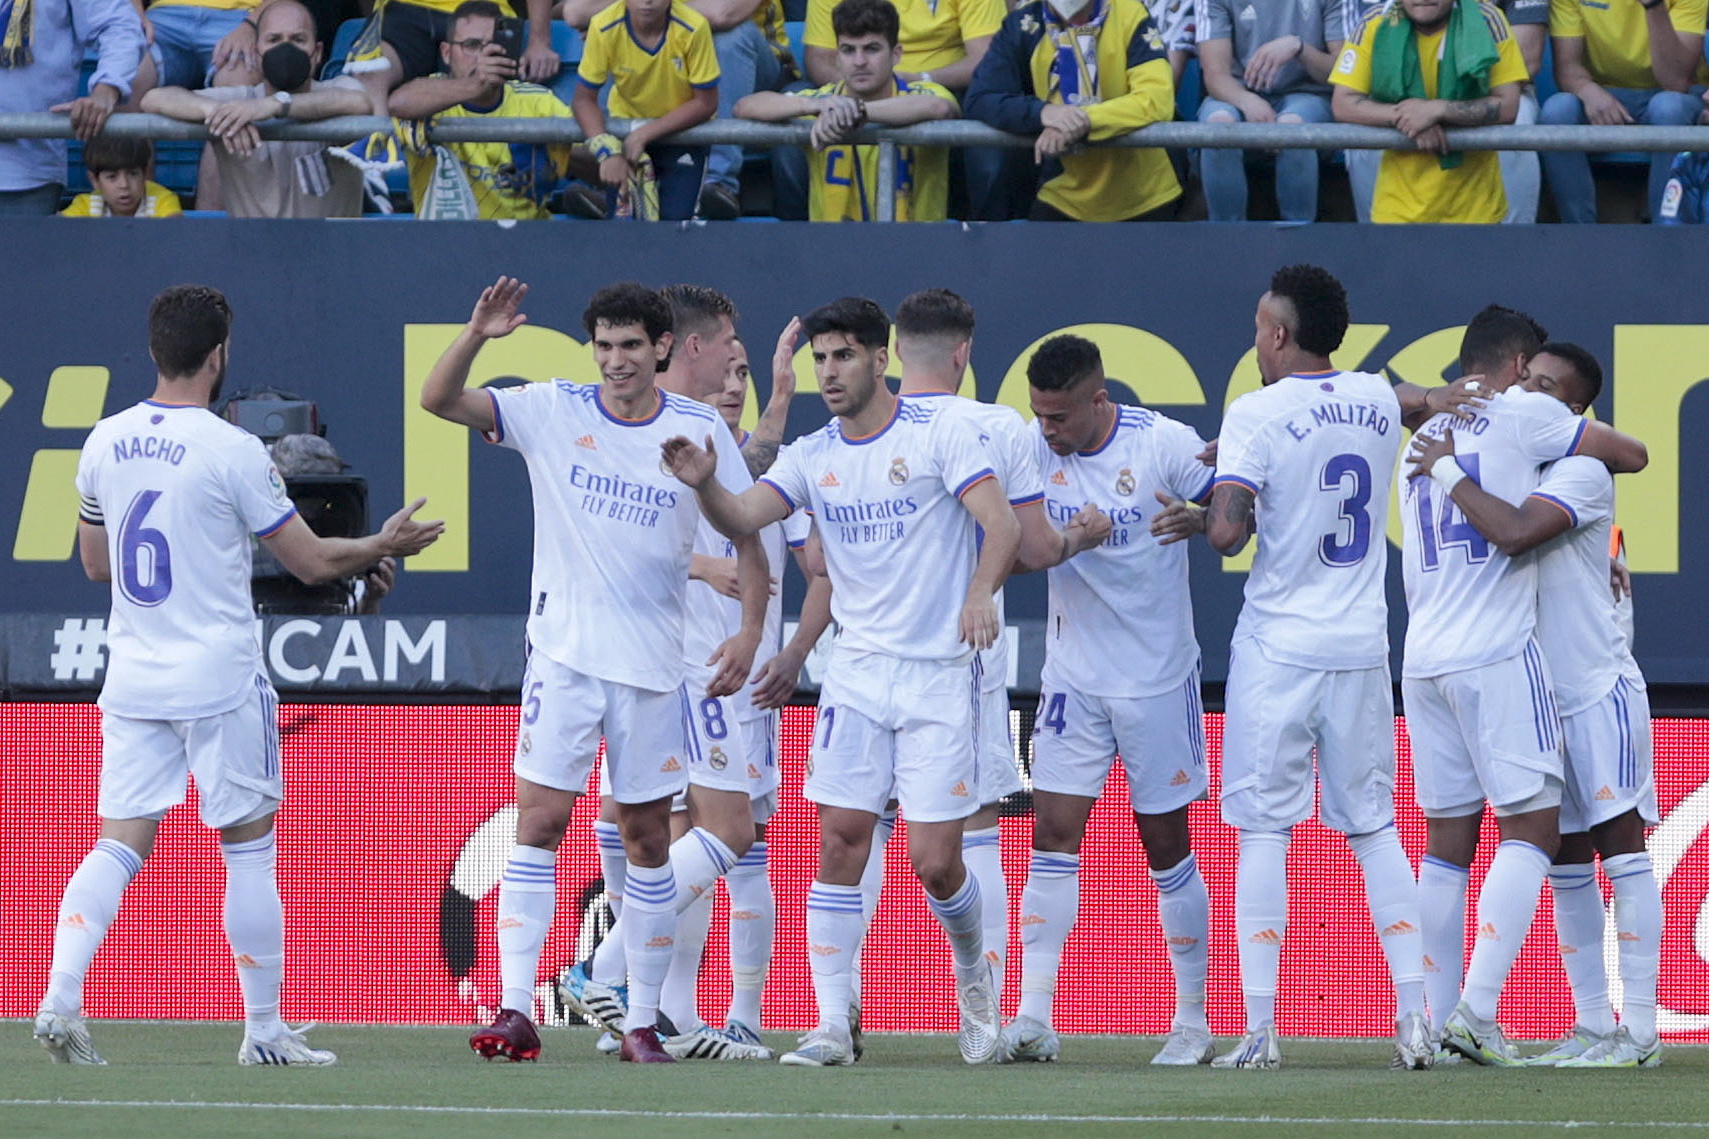 La Liga Matchday 13: Odds and Predictions - Villarreal USA